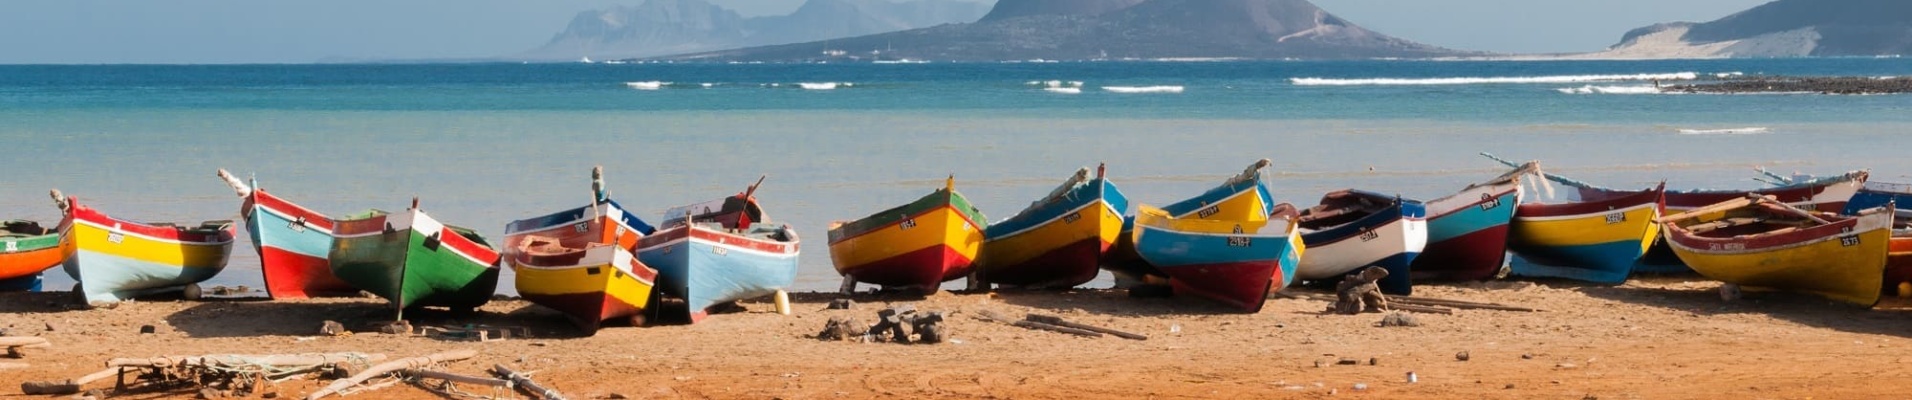 Des bateaux de pêche colorés posés sur la plage de Mindelo, Sao Vicente, Cap-Vert